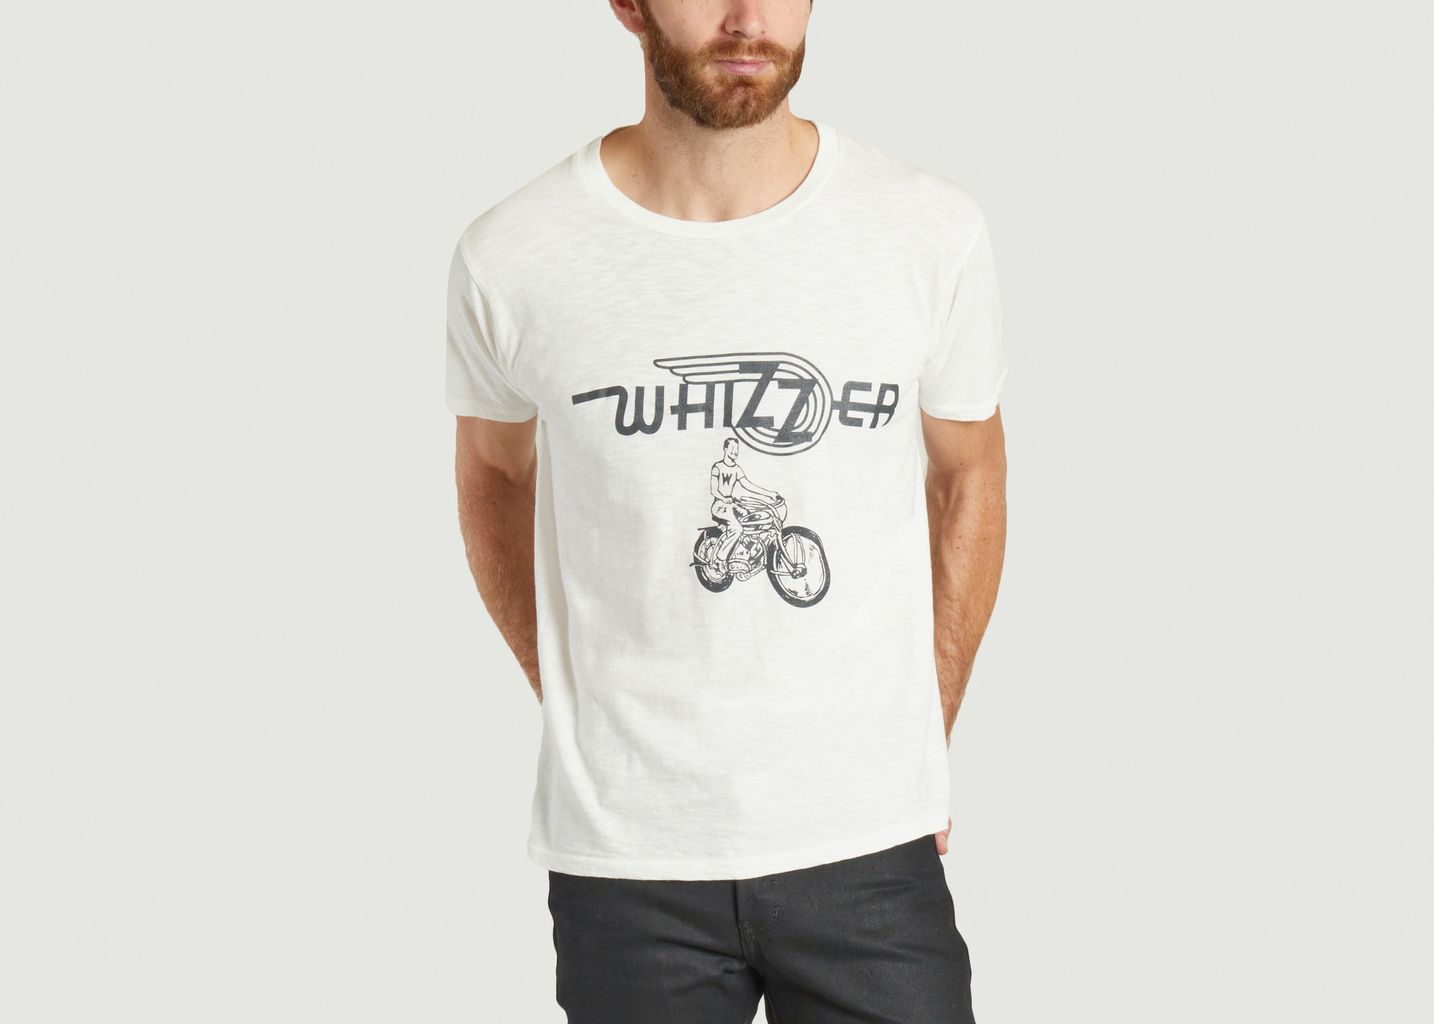 T-shirt Whizzer - Velva Sheen